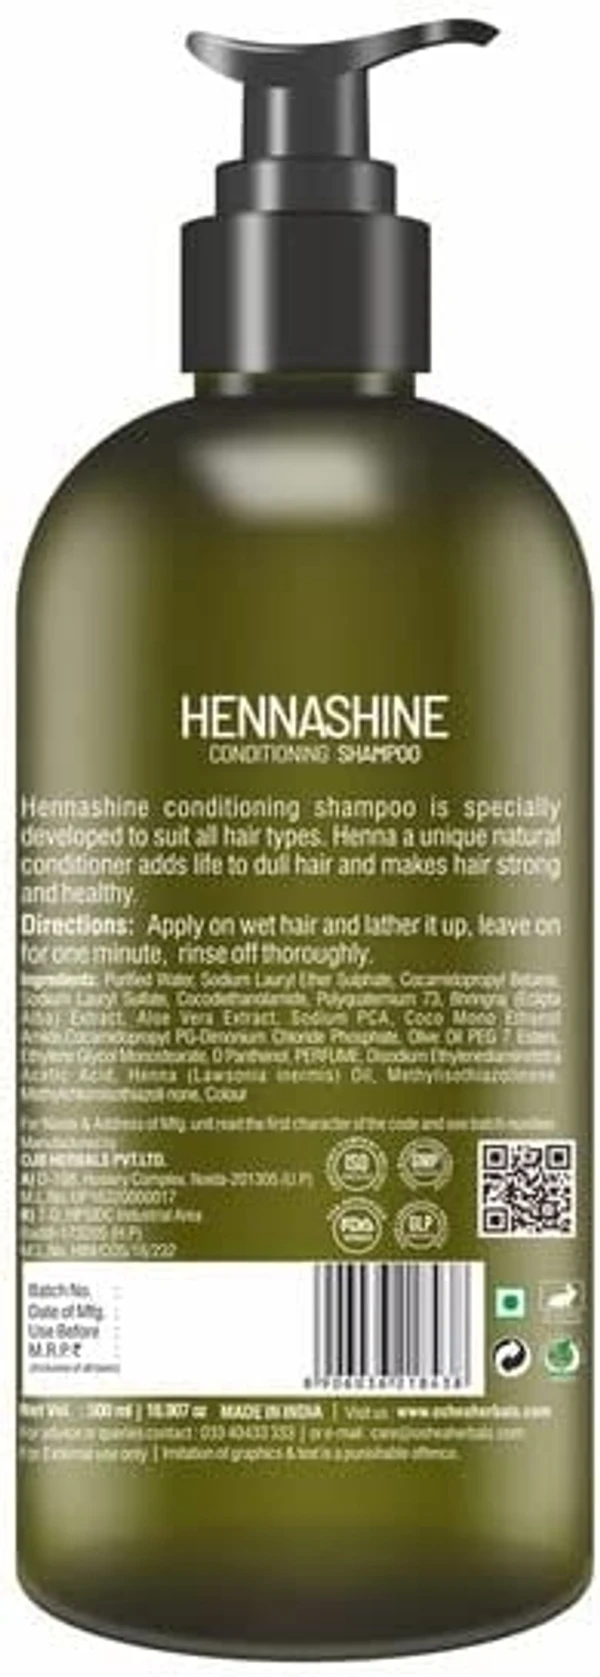 Oshea  oshea harbal Henna shine conditioning shampoo 500ml 